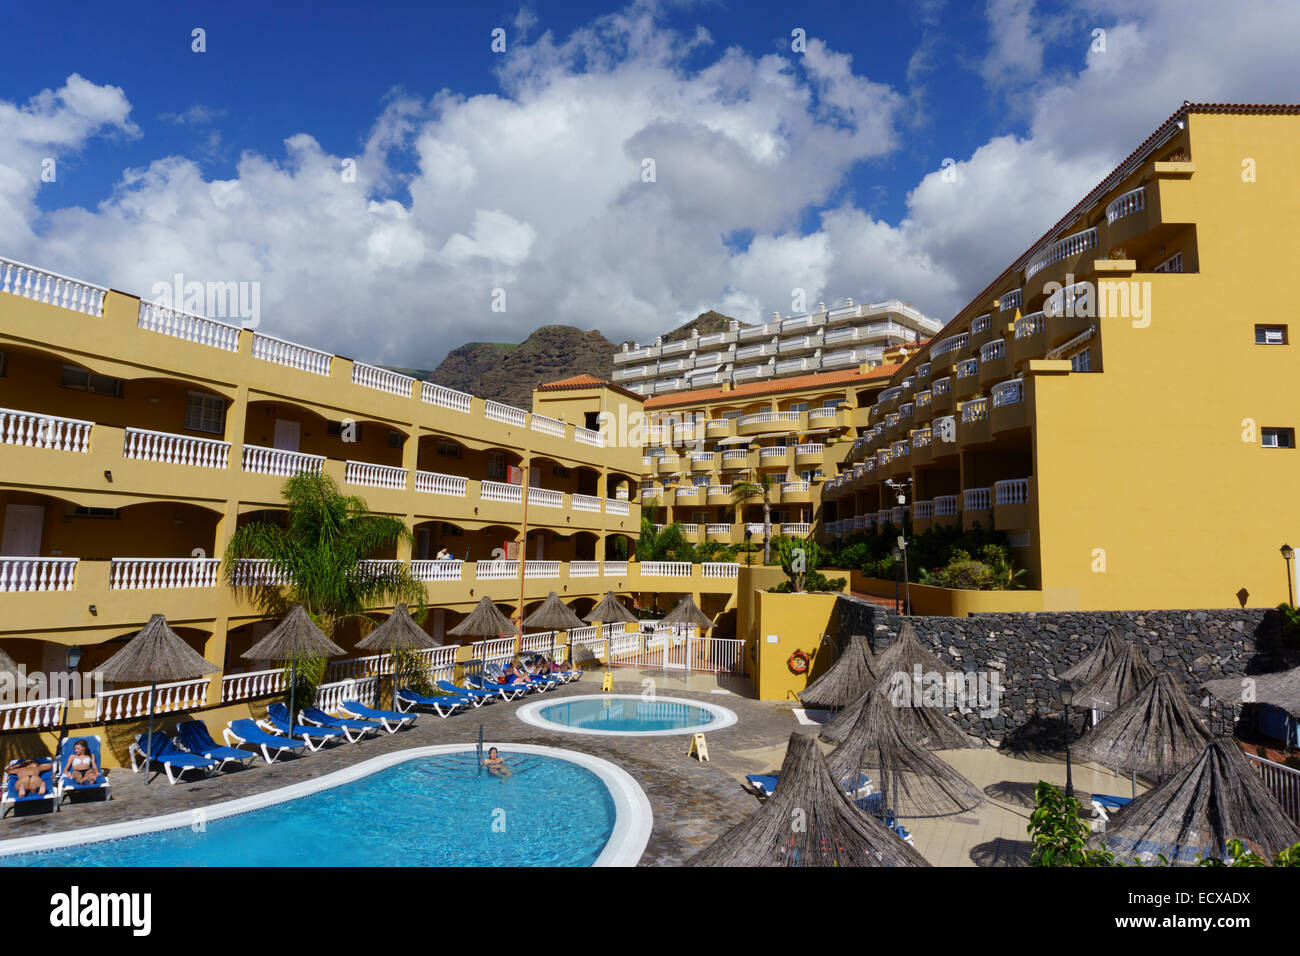 Tenerife - El Marques Palace hotel in Puerto de Santiago Stock Photo - Alamy